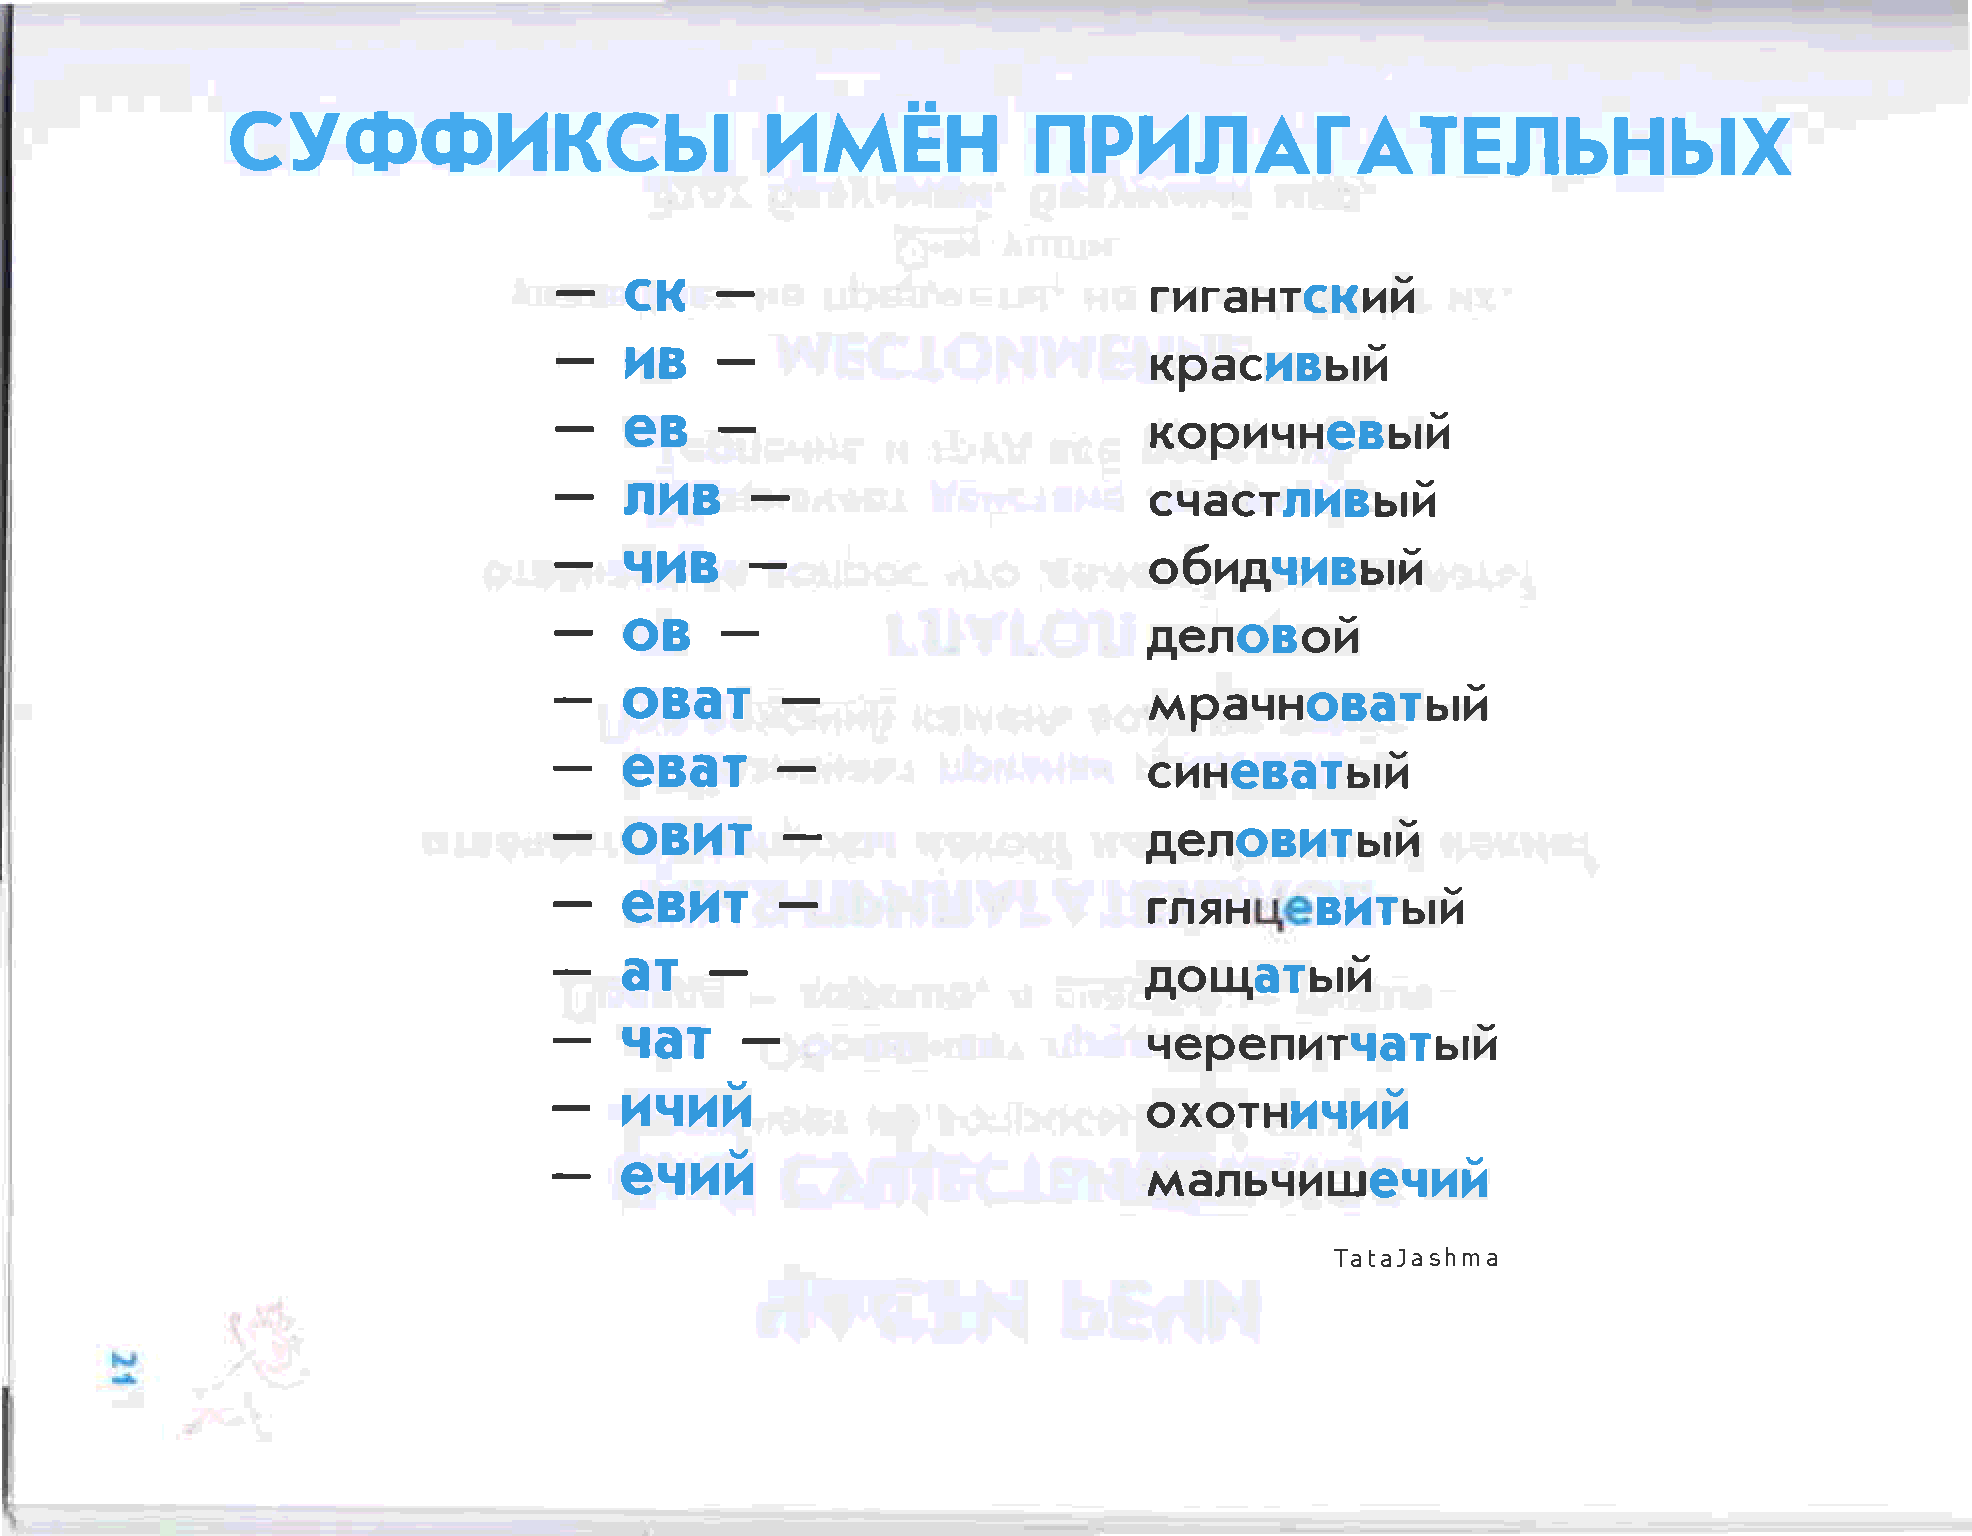 Мороженщики суффикс. Суффиксы прилагательных в русском языке таблица. Все суффиксы прилагательных в русском языке. Суффиксы прилагательного в русском языке. Суффиксы имен прилагательных.